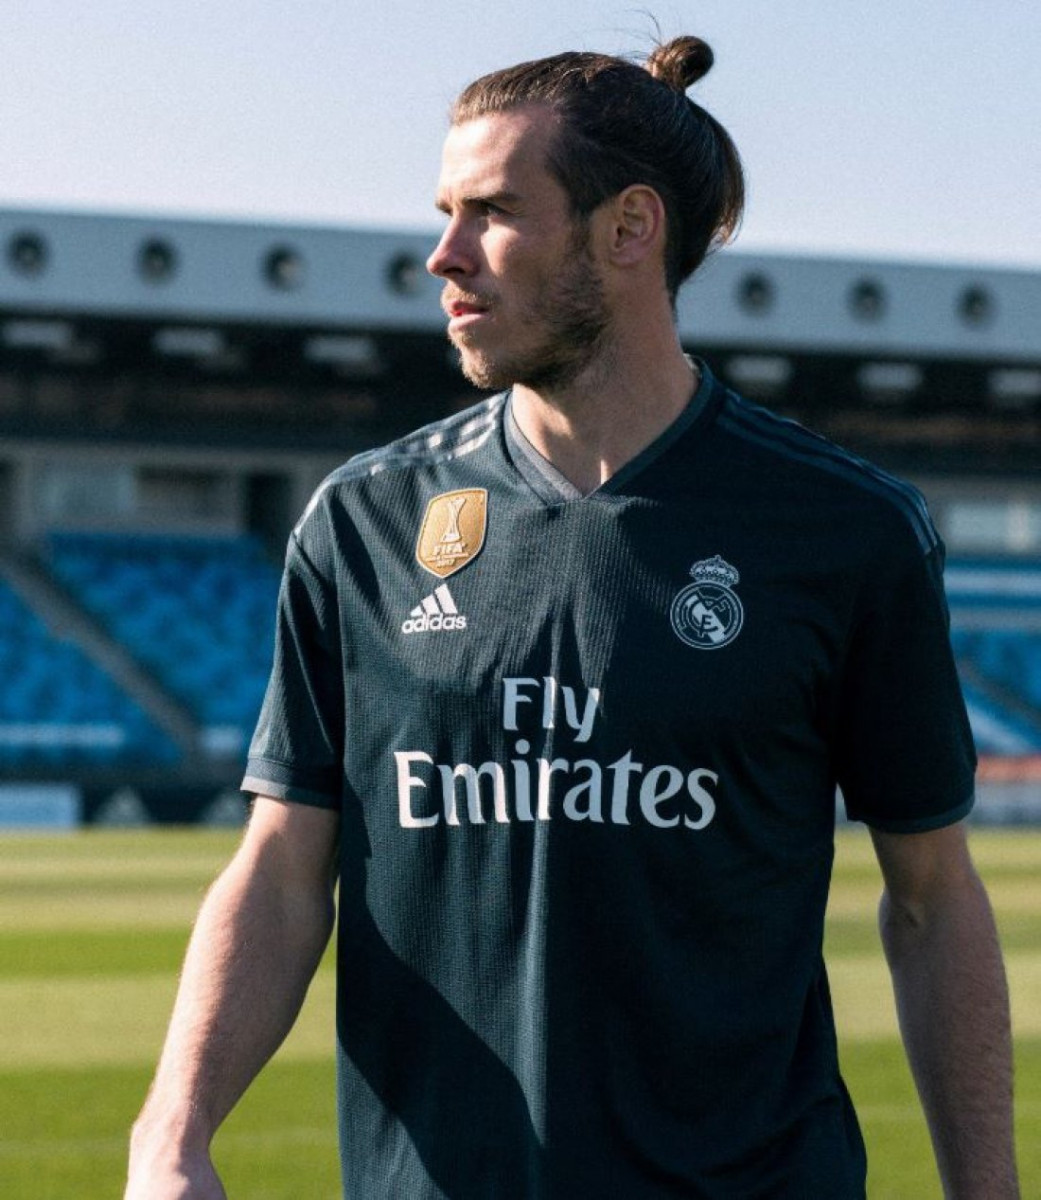 Gratificante cuerda grado El Real Madrid: La camiseta más cara del mundo. - Blogs - Fútbol Emotion